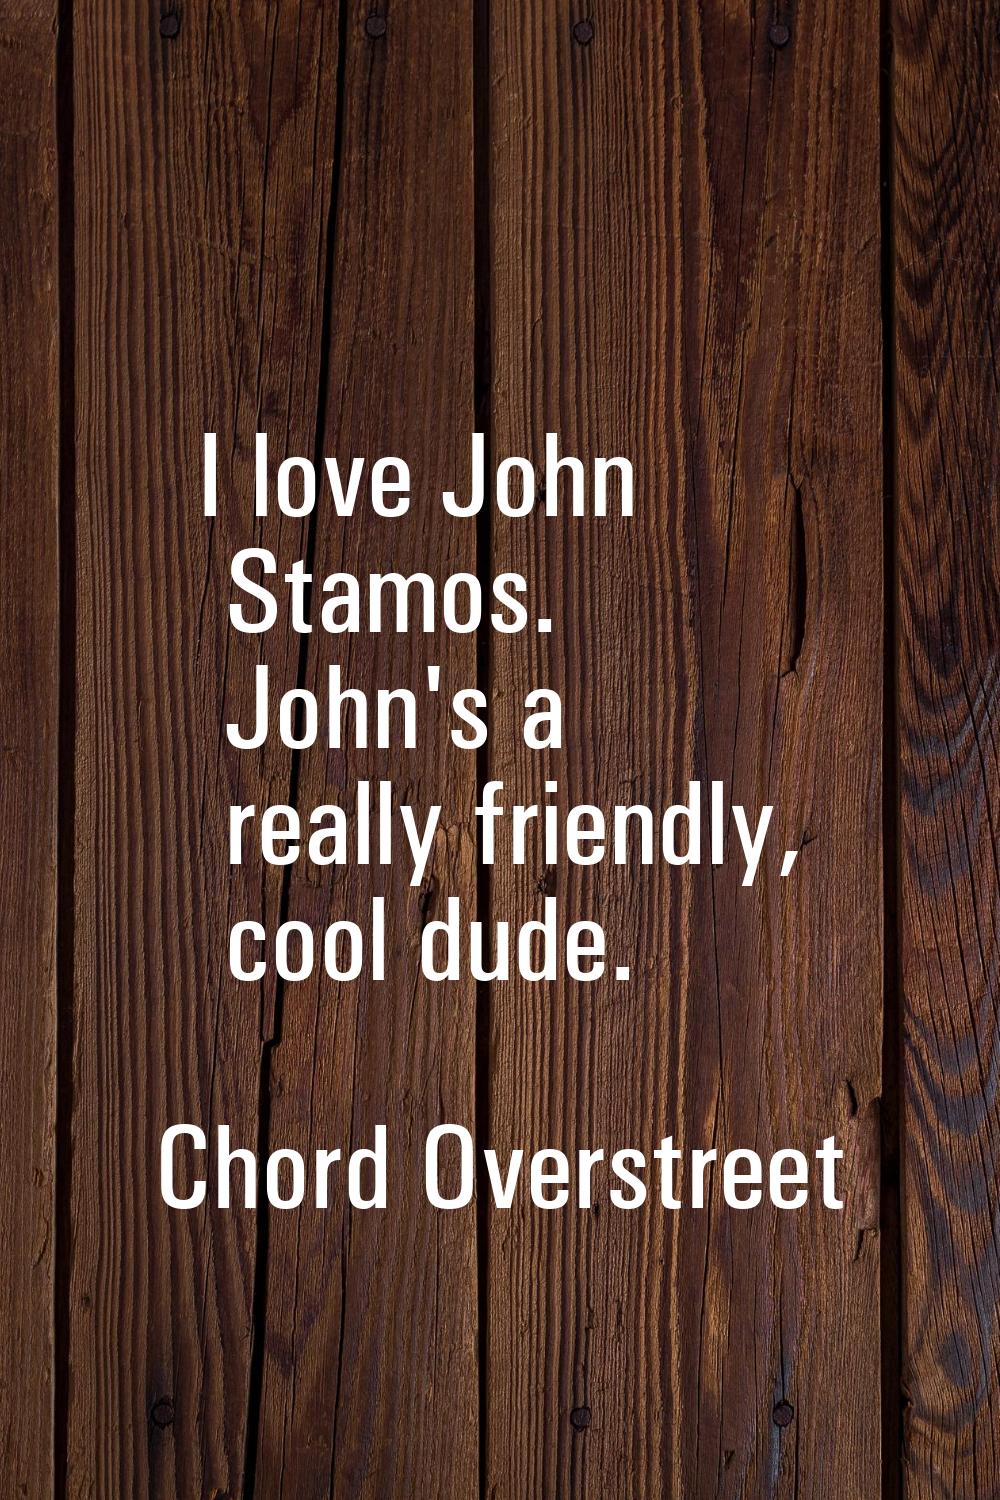 I love John Stamos. John's a really friendly, cool dude.